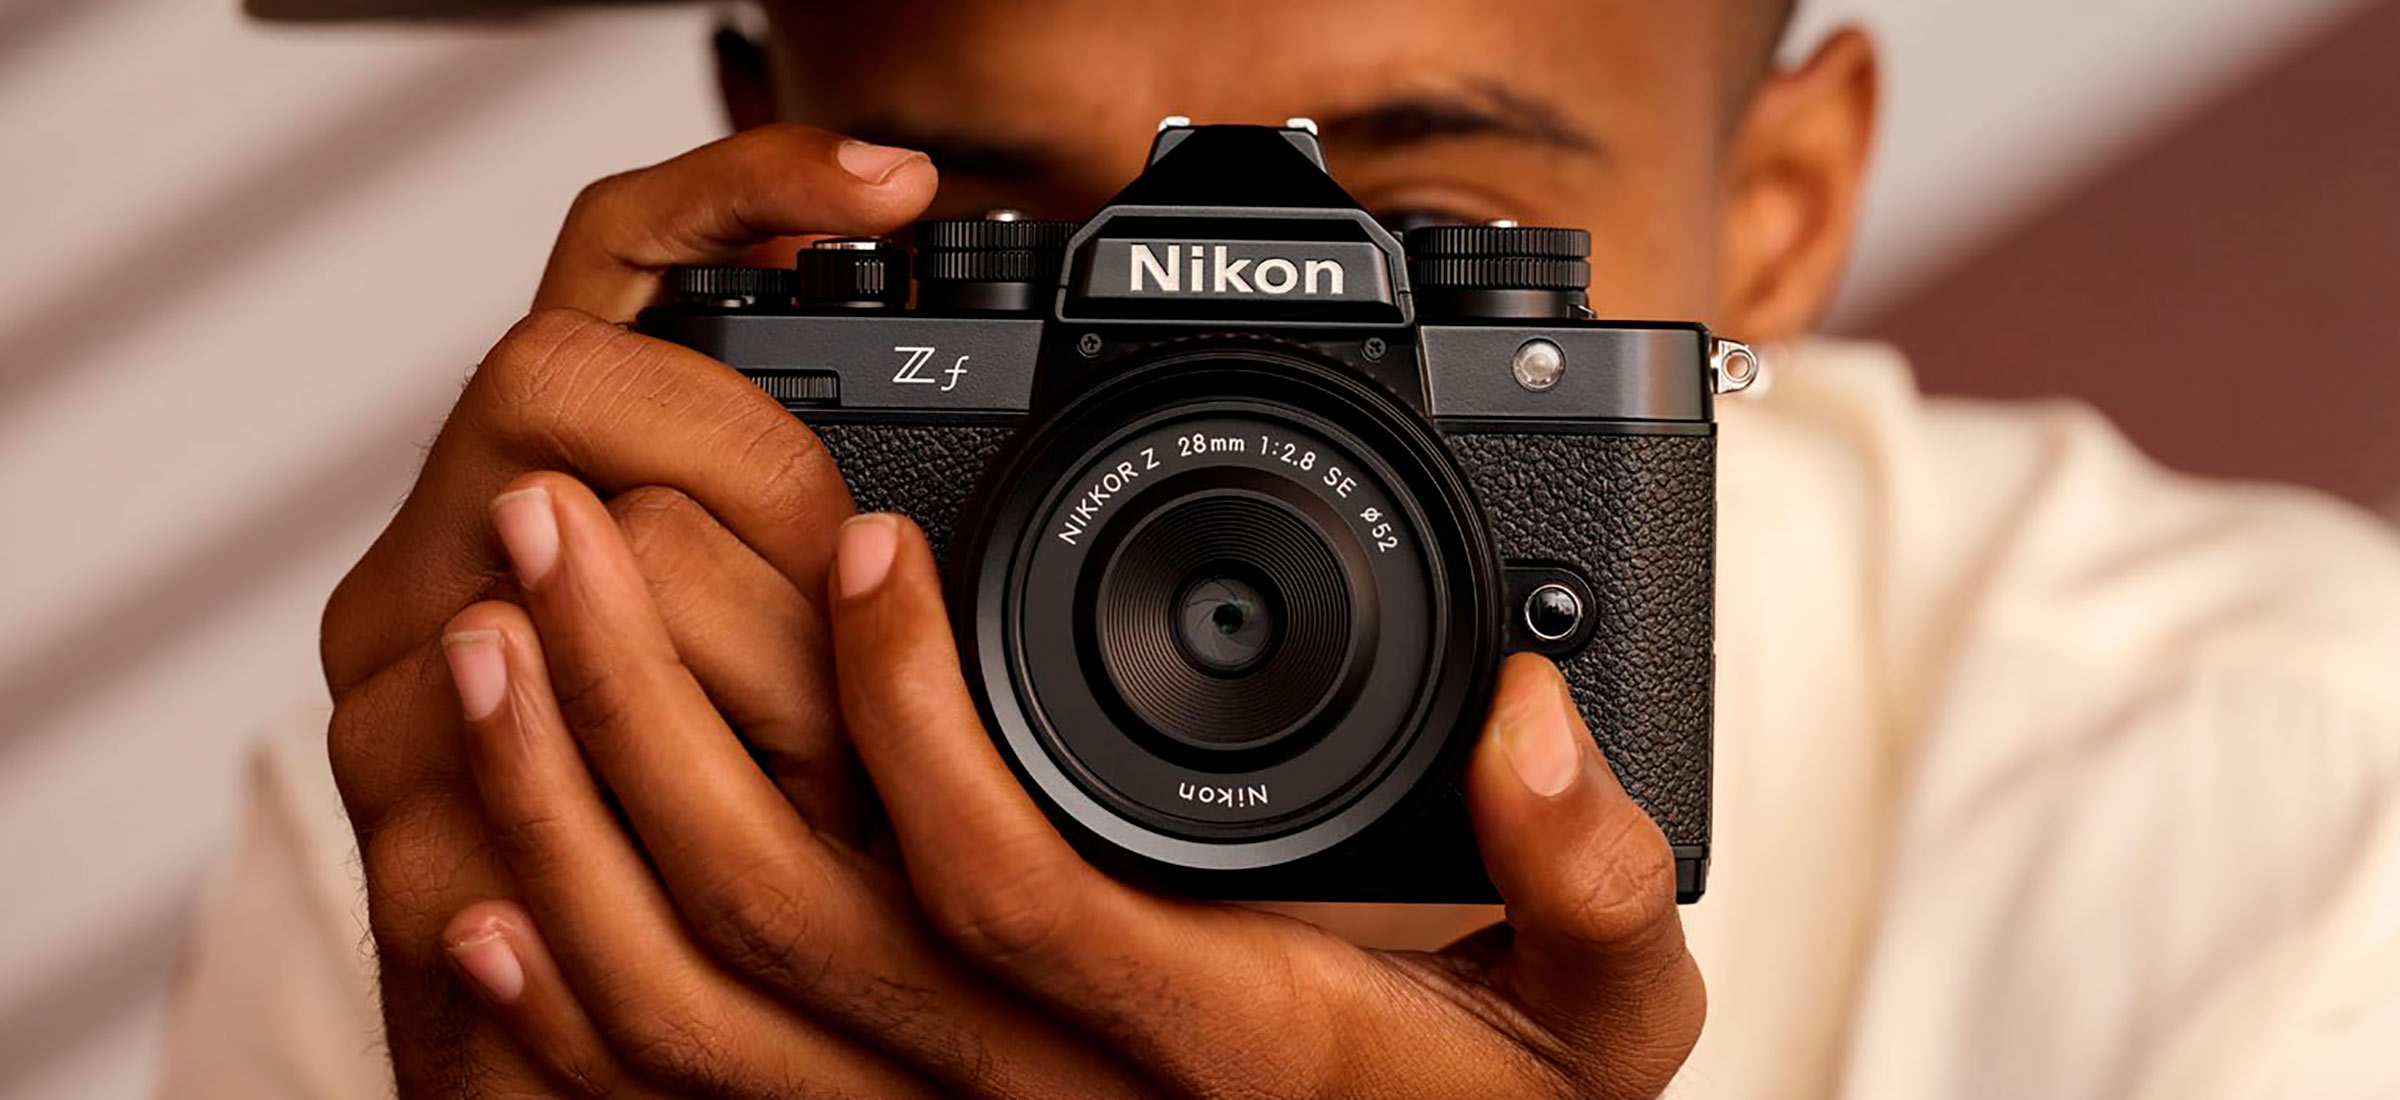 Nikon Zf to aparat z lat 80. z nowoczesnym wnętrzem. Strzał w dziesiątkę?